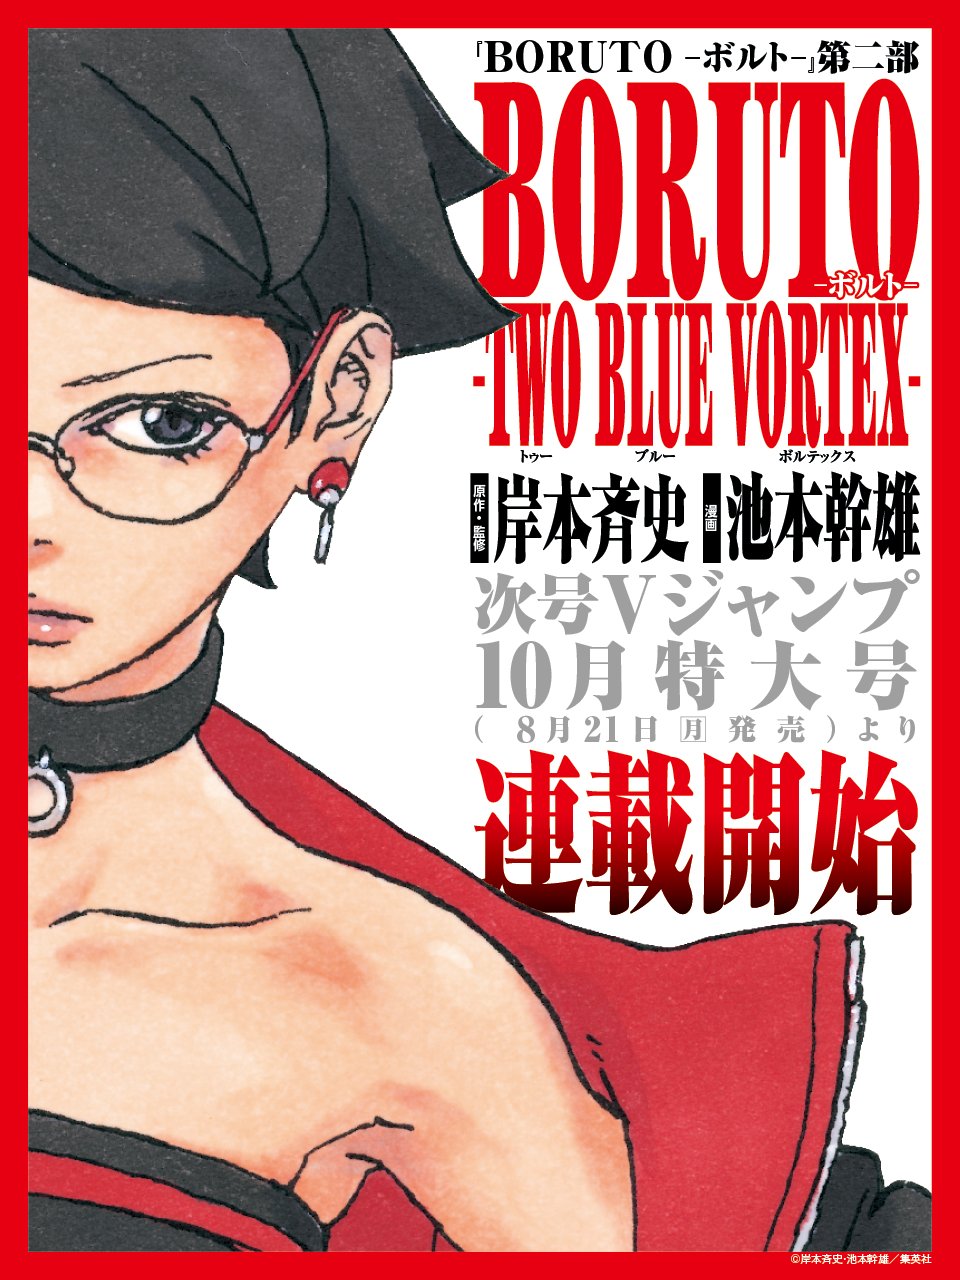 Boruto - TWO BLUE VORTEX on X: 23 Days Until Boruto - Two Blue